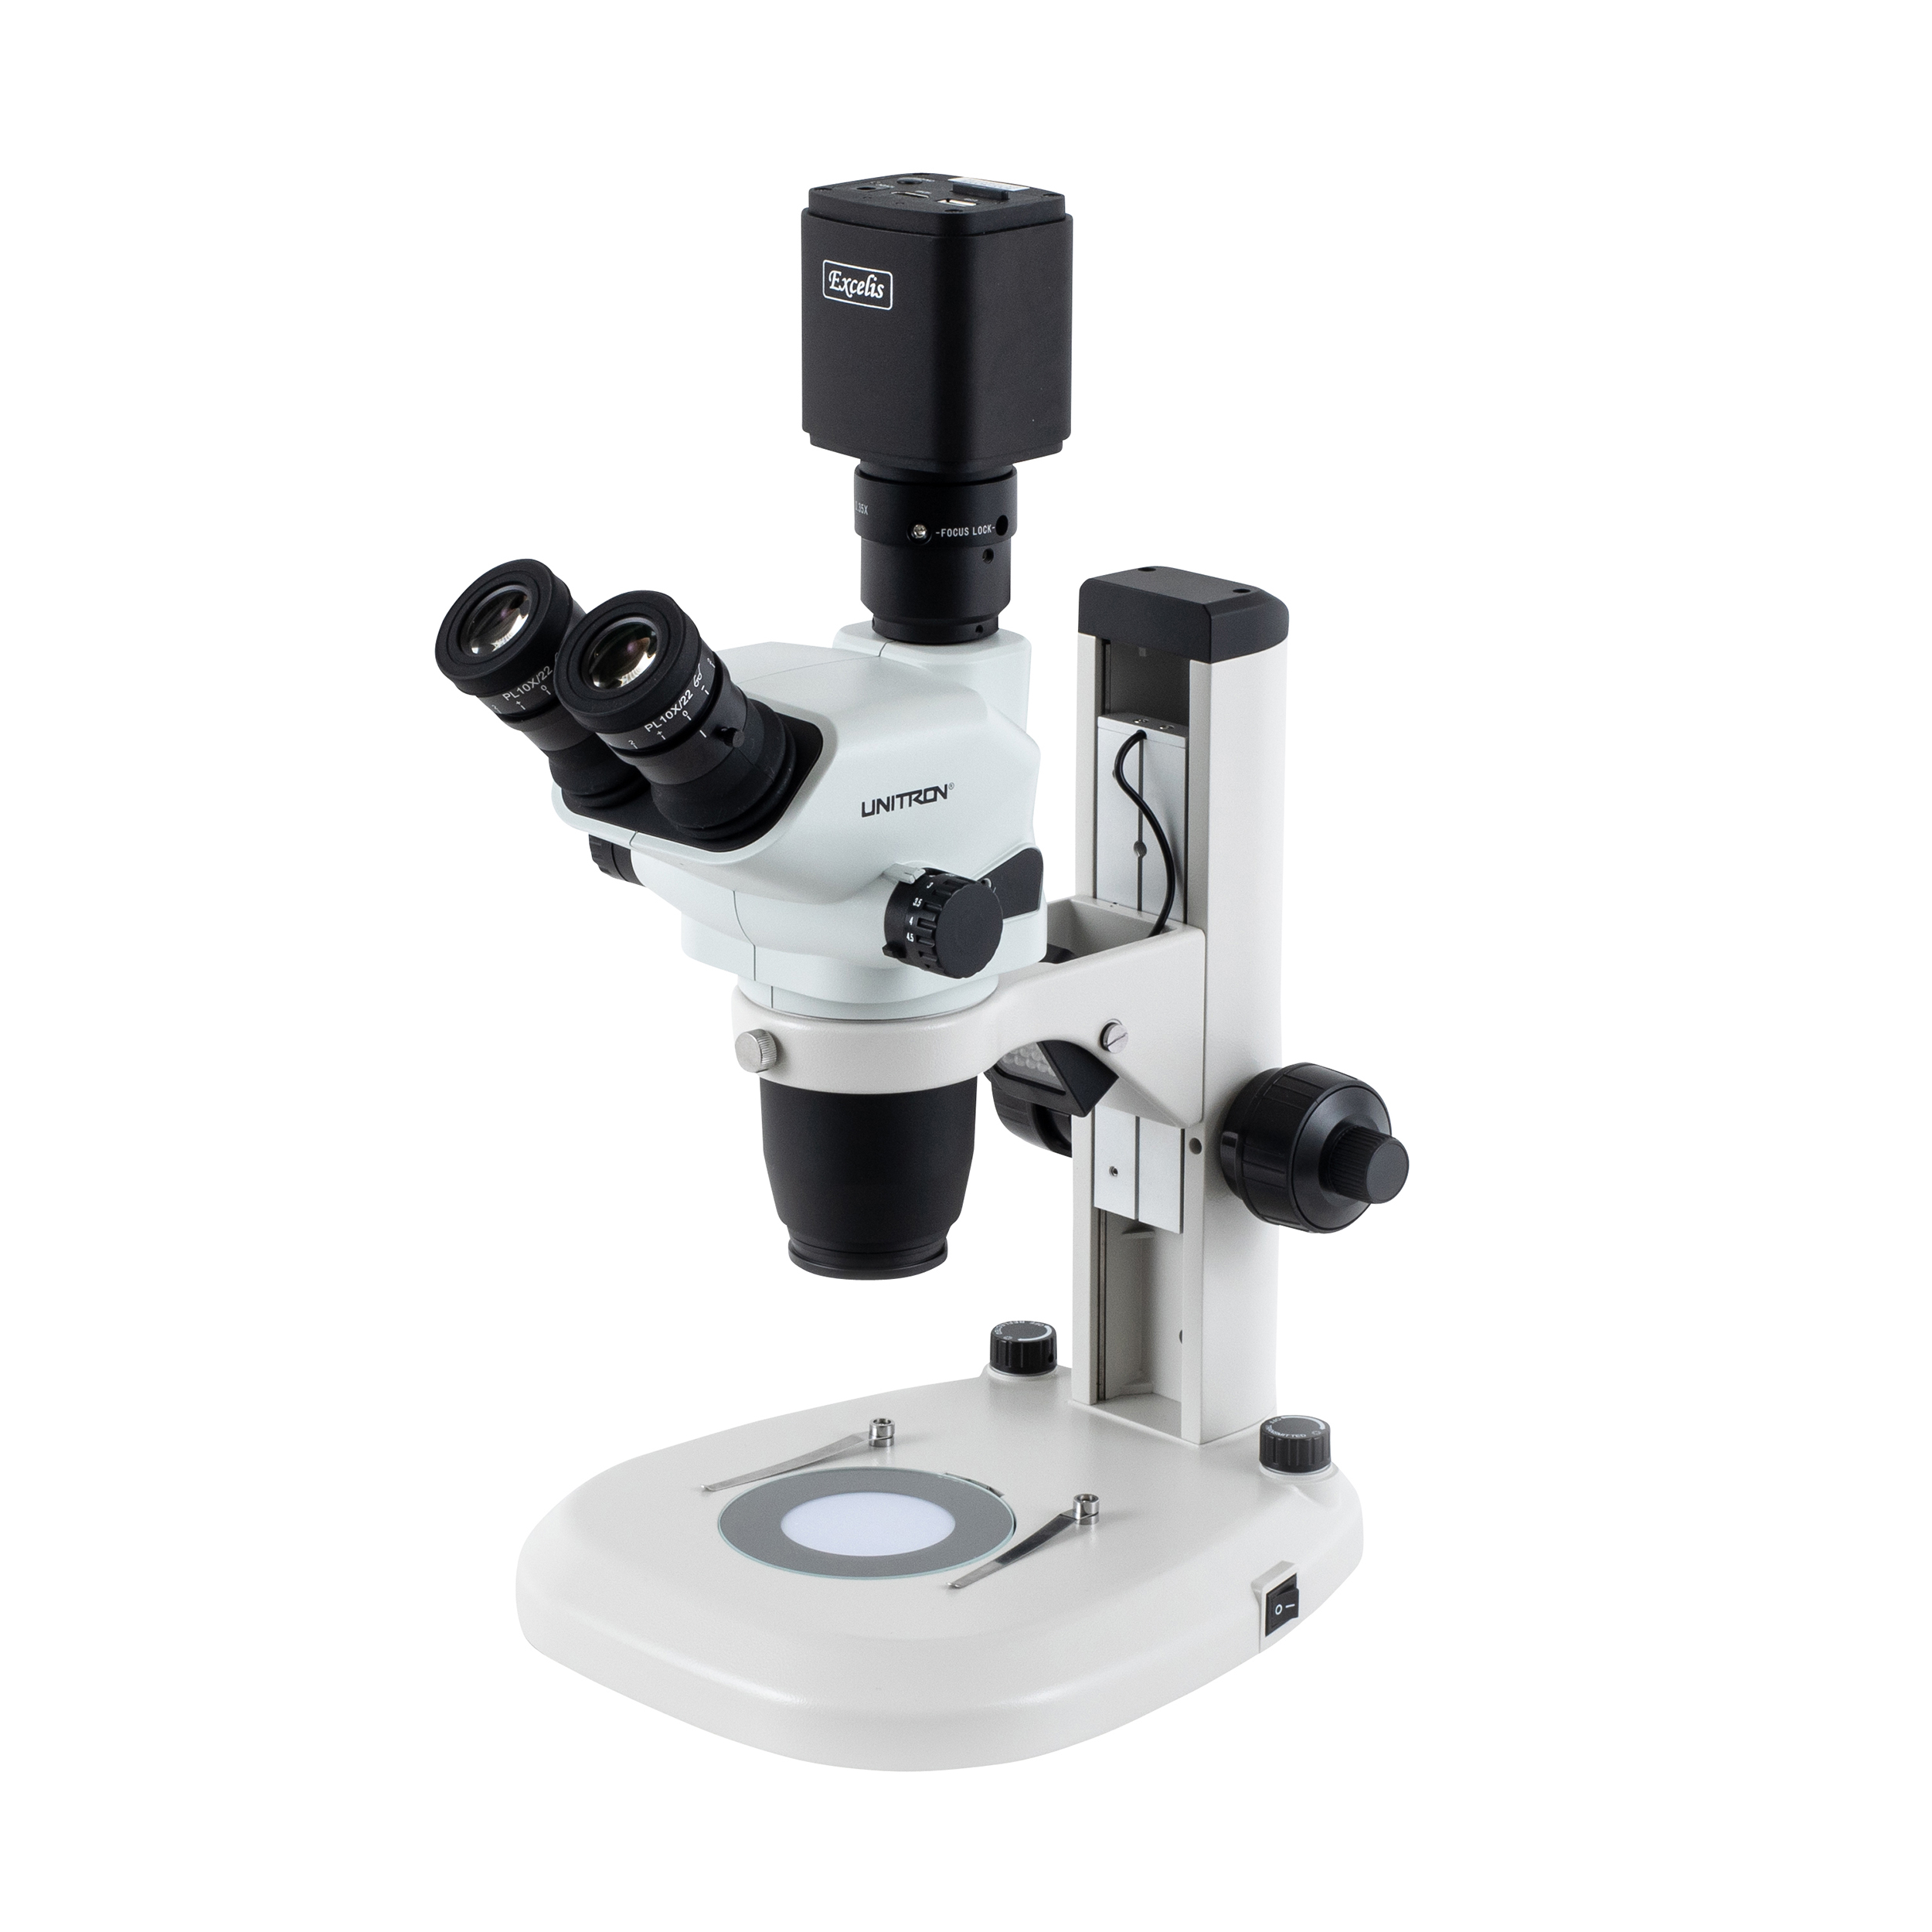 UNITRON Stereo Microscopes